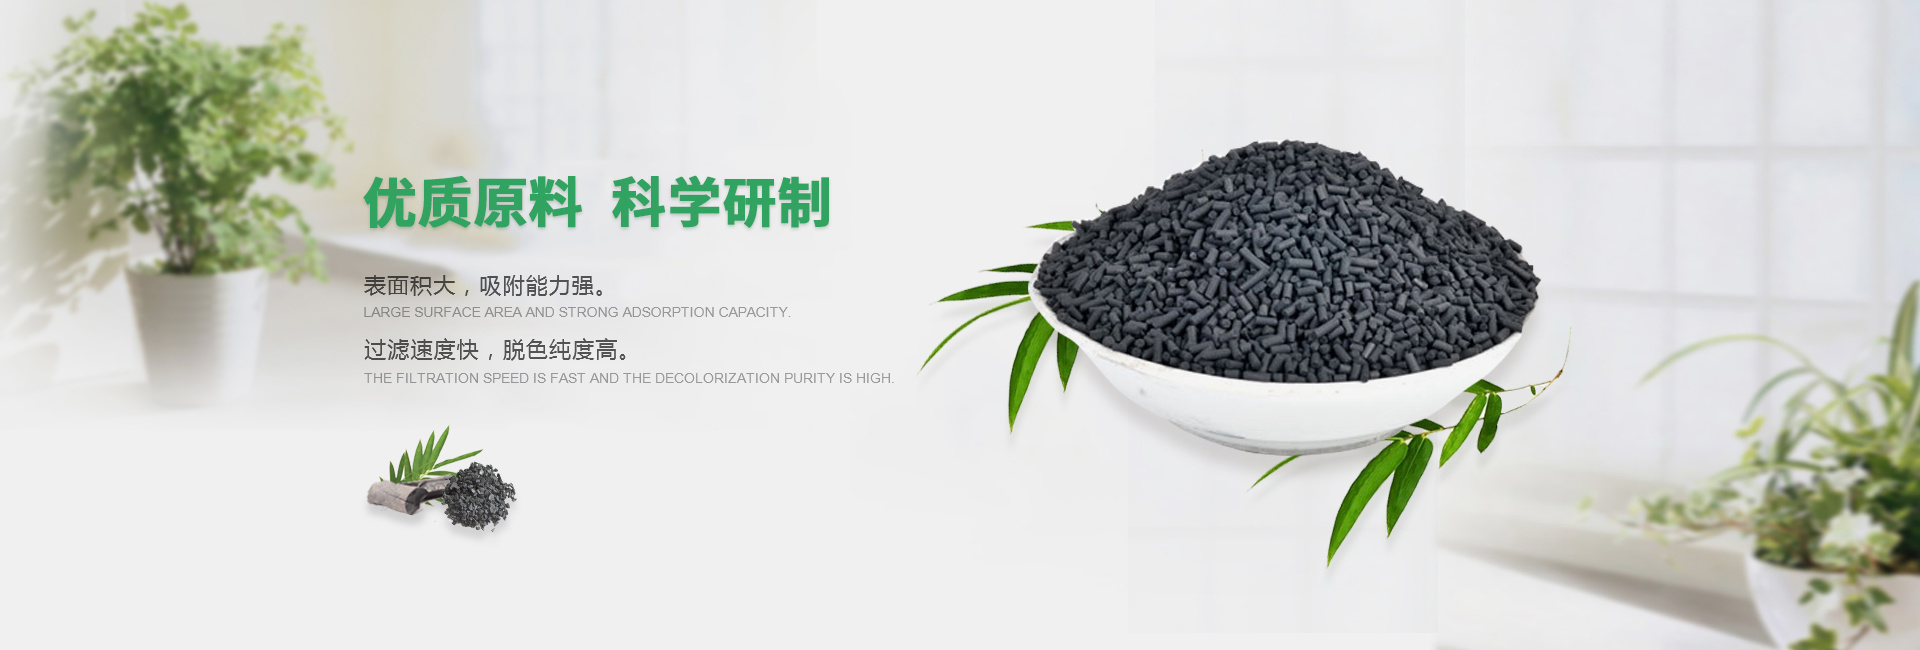 上海新金湖活性炭有限公司